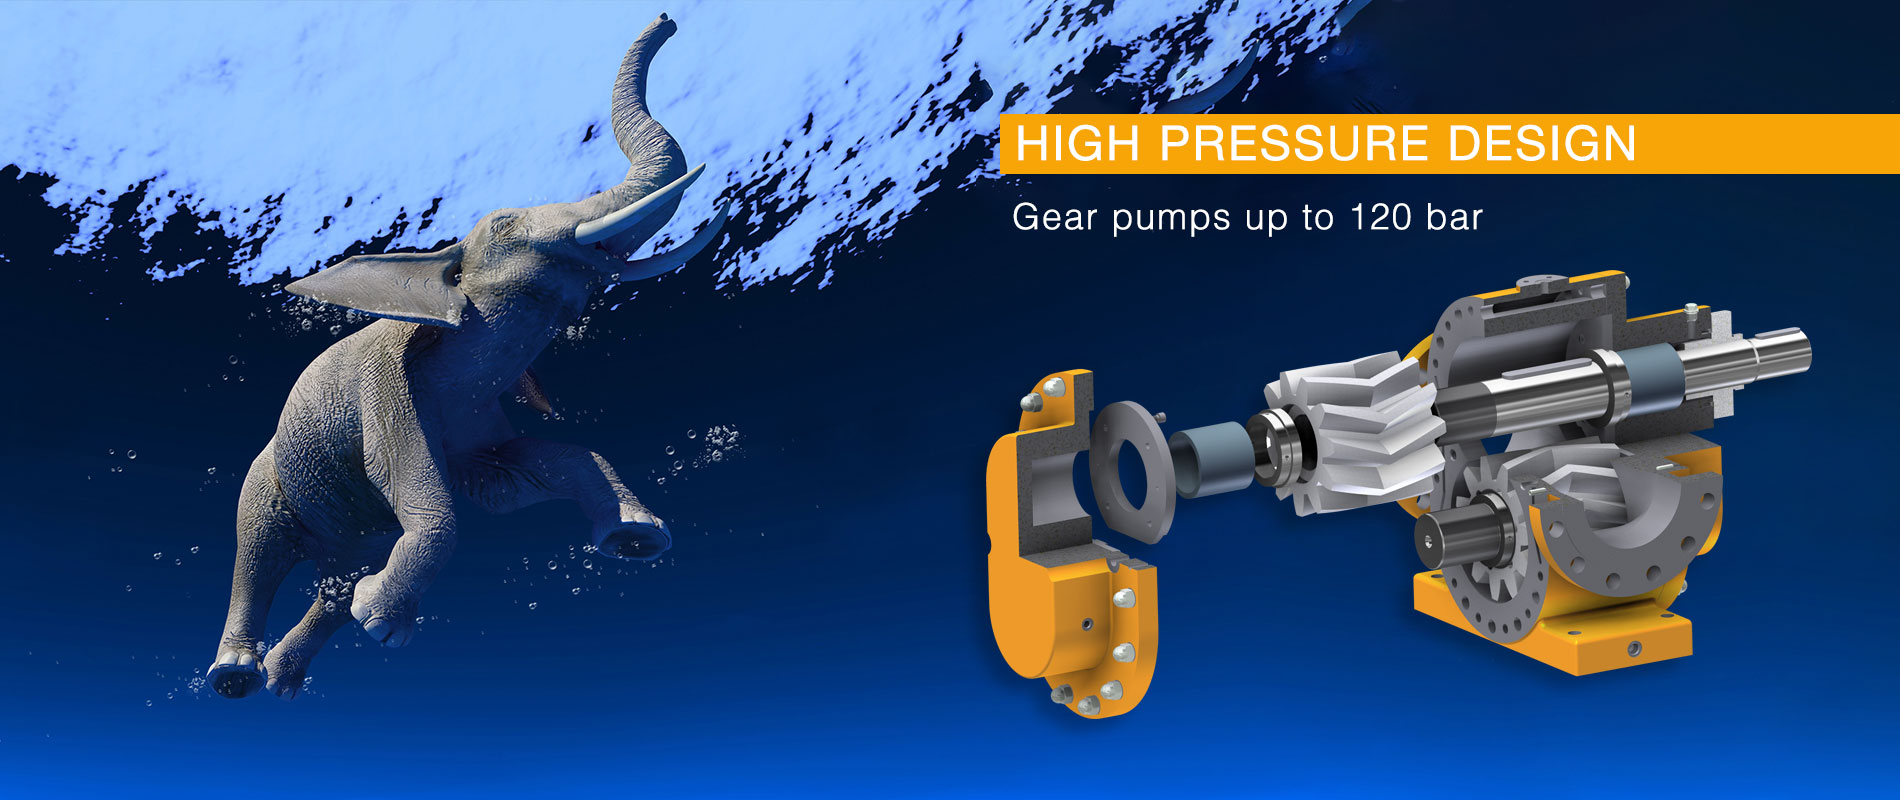 High Pressure Design by Zeilfelder Pumpen